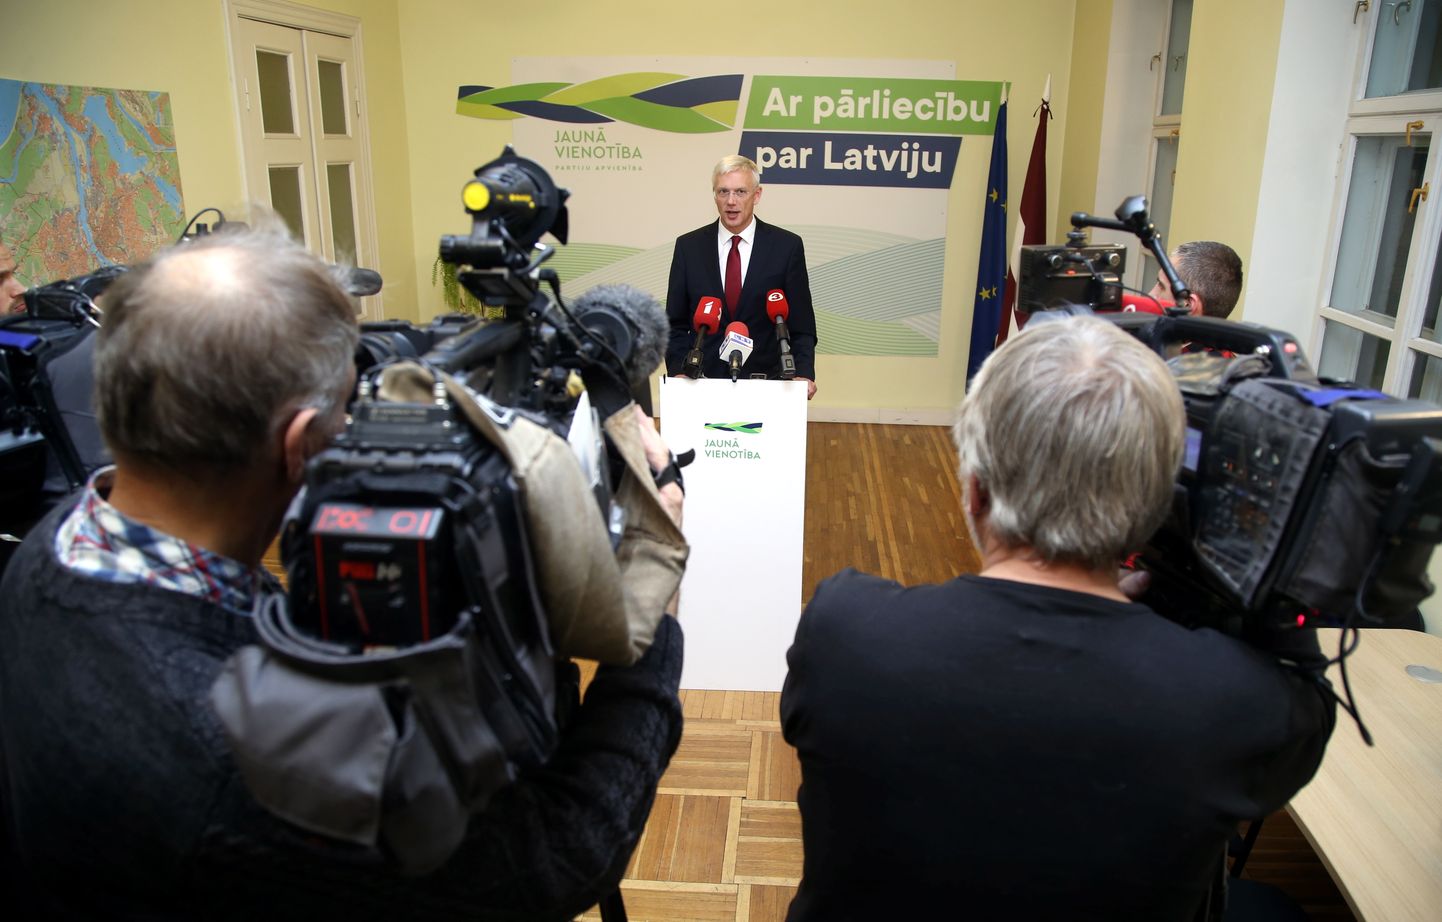 Partiju apvienības "Jaunā Vienotība" Ministru prezidenta amata kandidāts Krišjānis Kariņš preses brīfingā informē par valdības veidošanu.